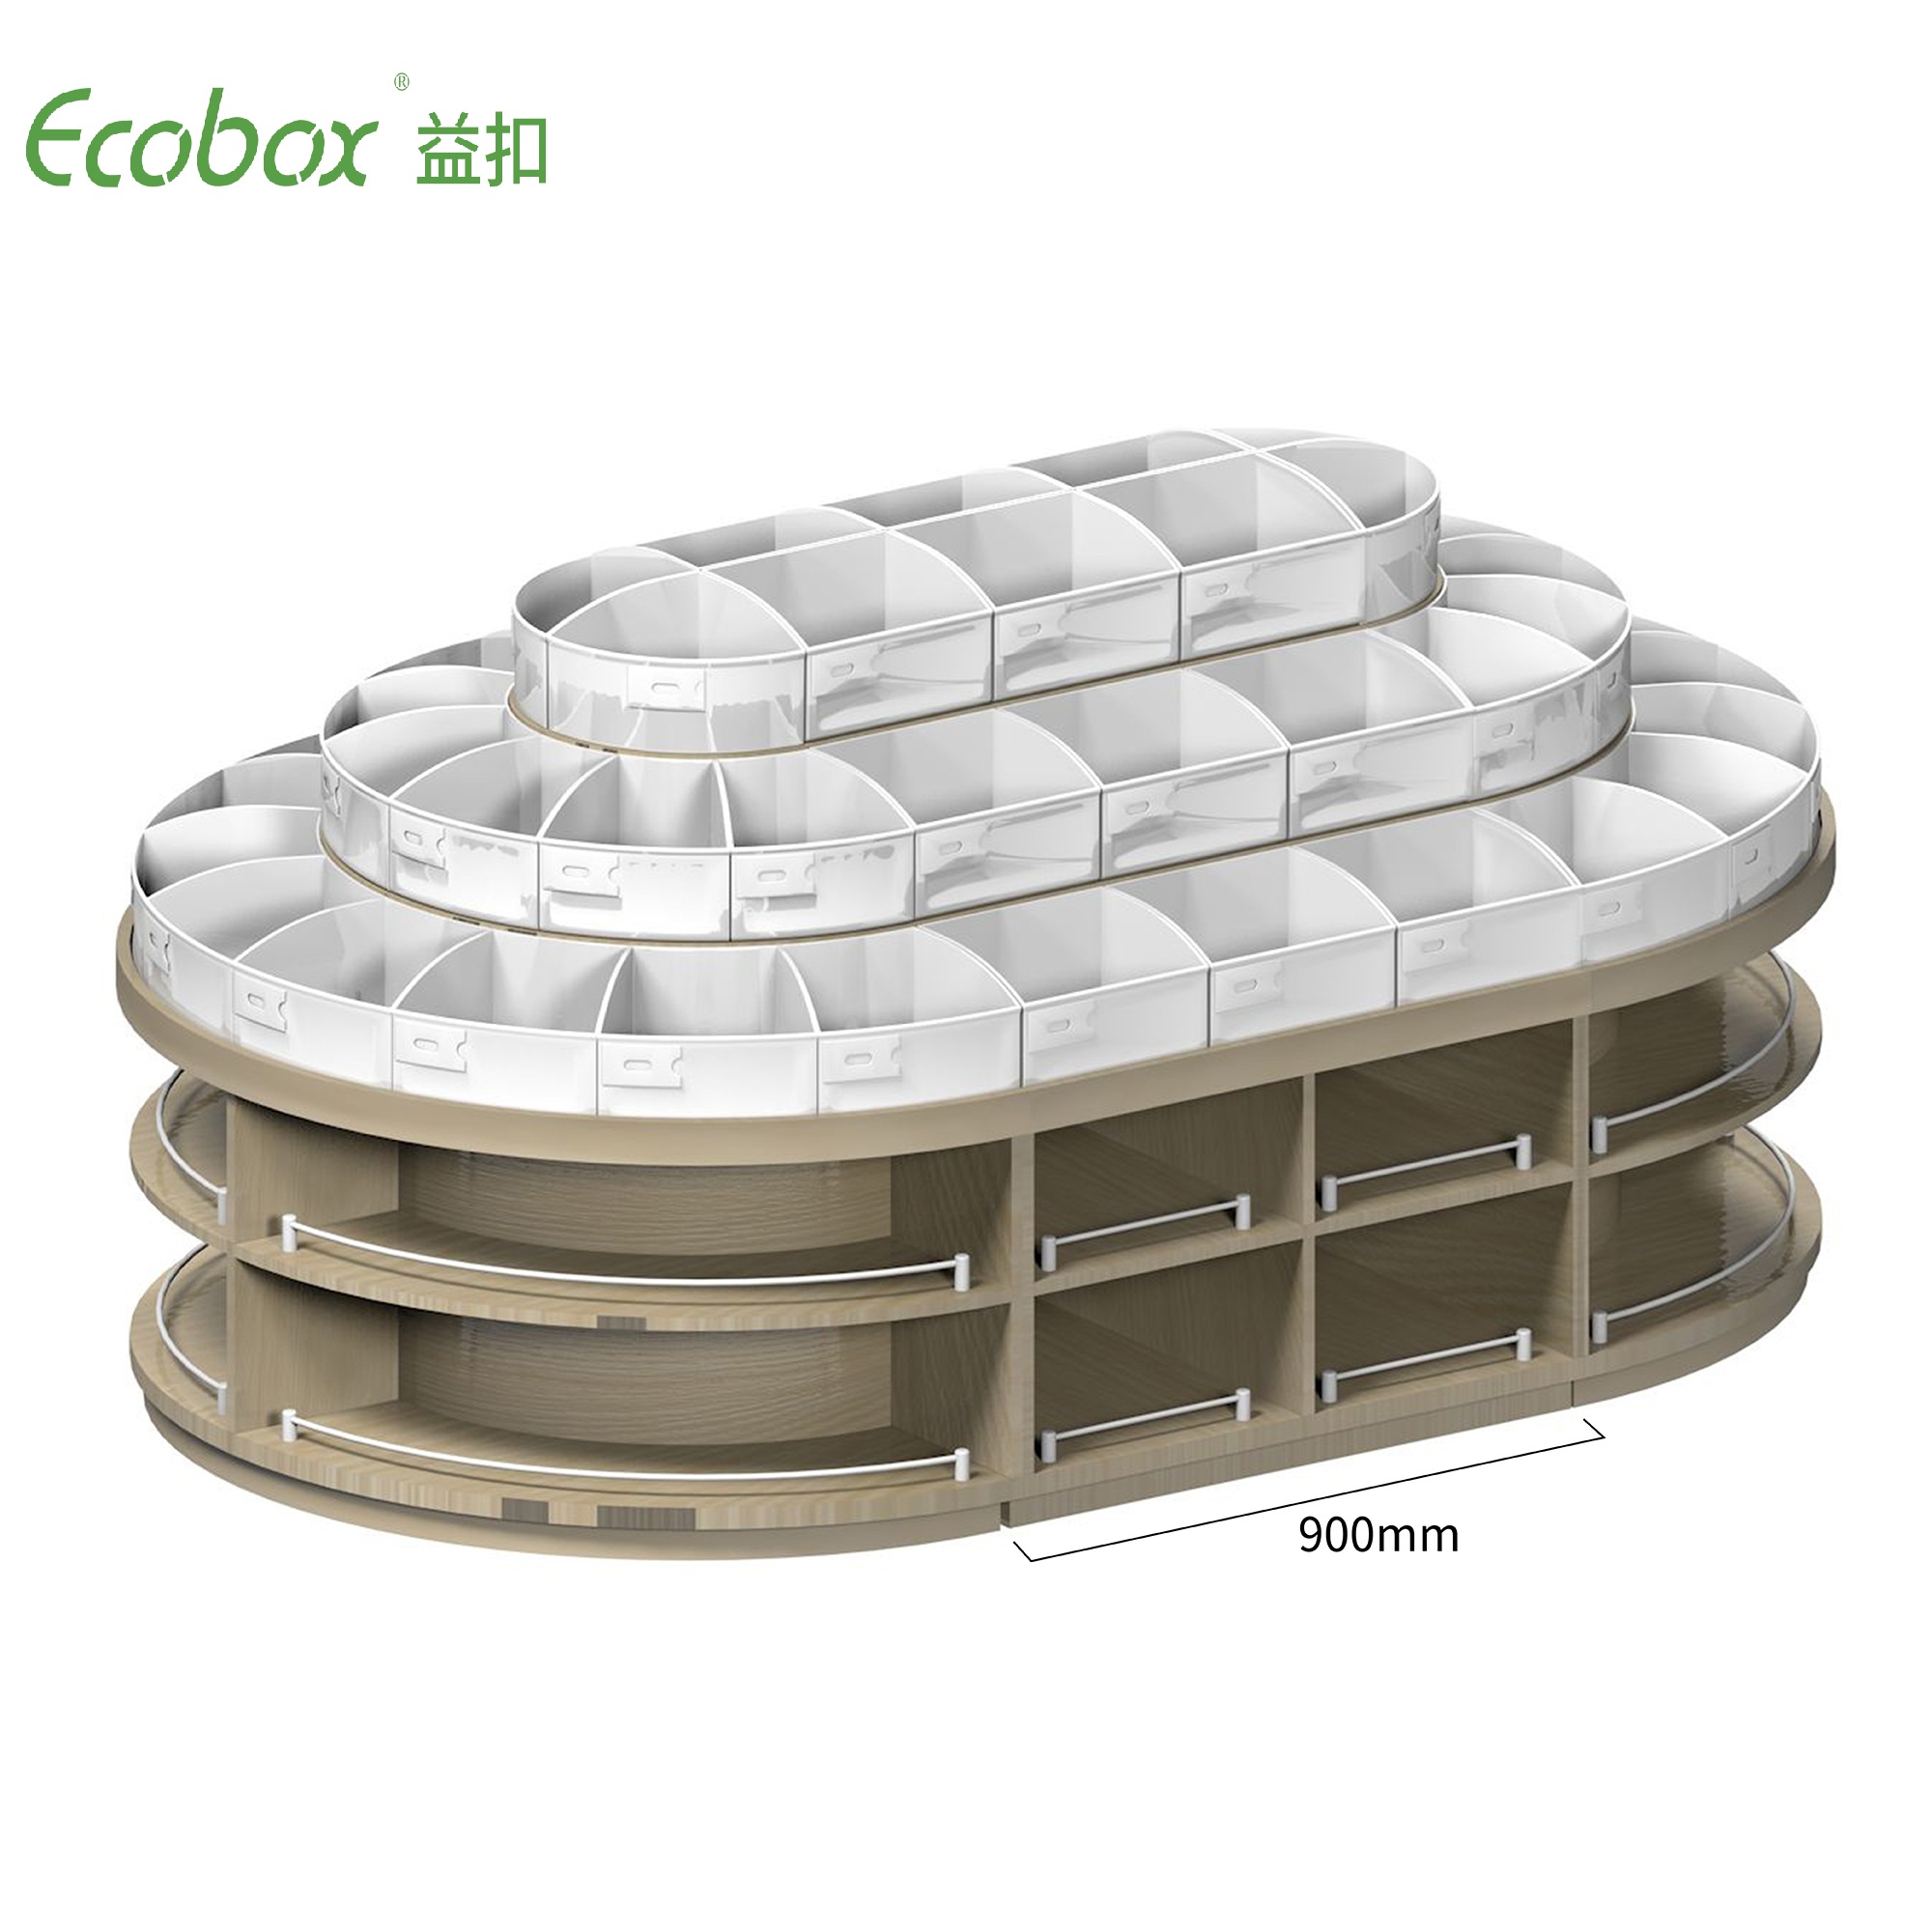 Rundes Regal der Ecobox G001-Serie mit Ecobox-Großbehältern für Supermarkt-Großlebensmitteldisplays